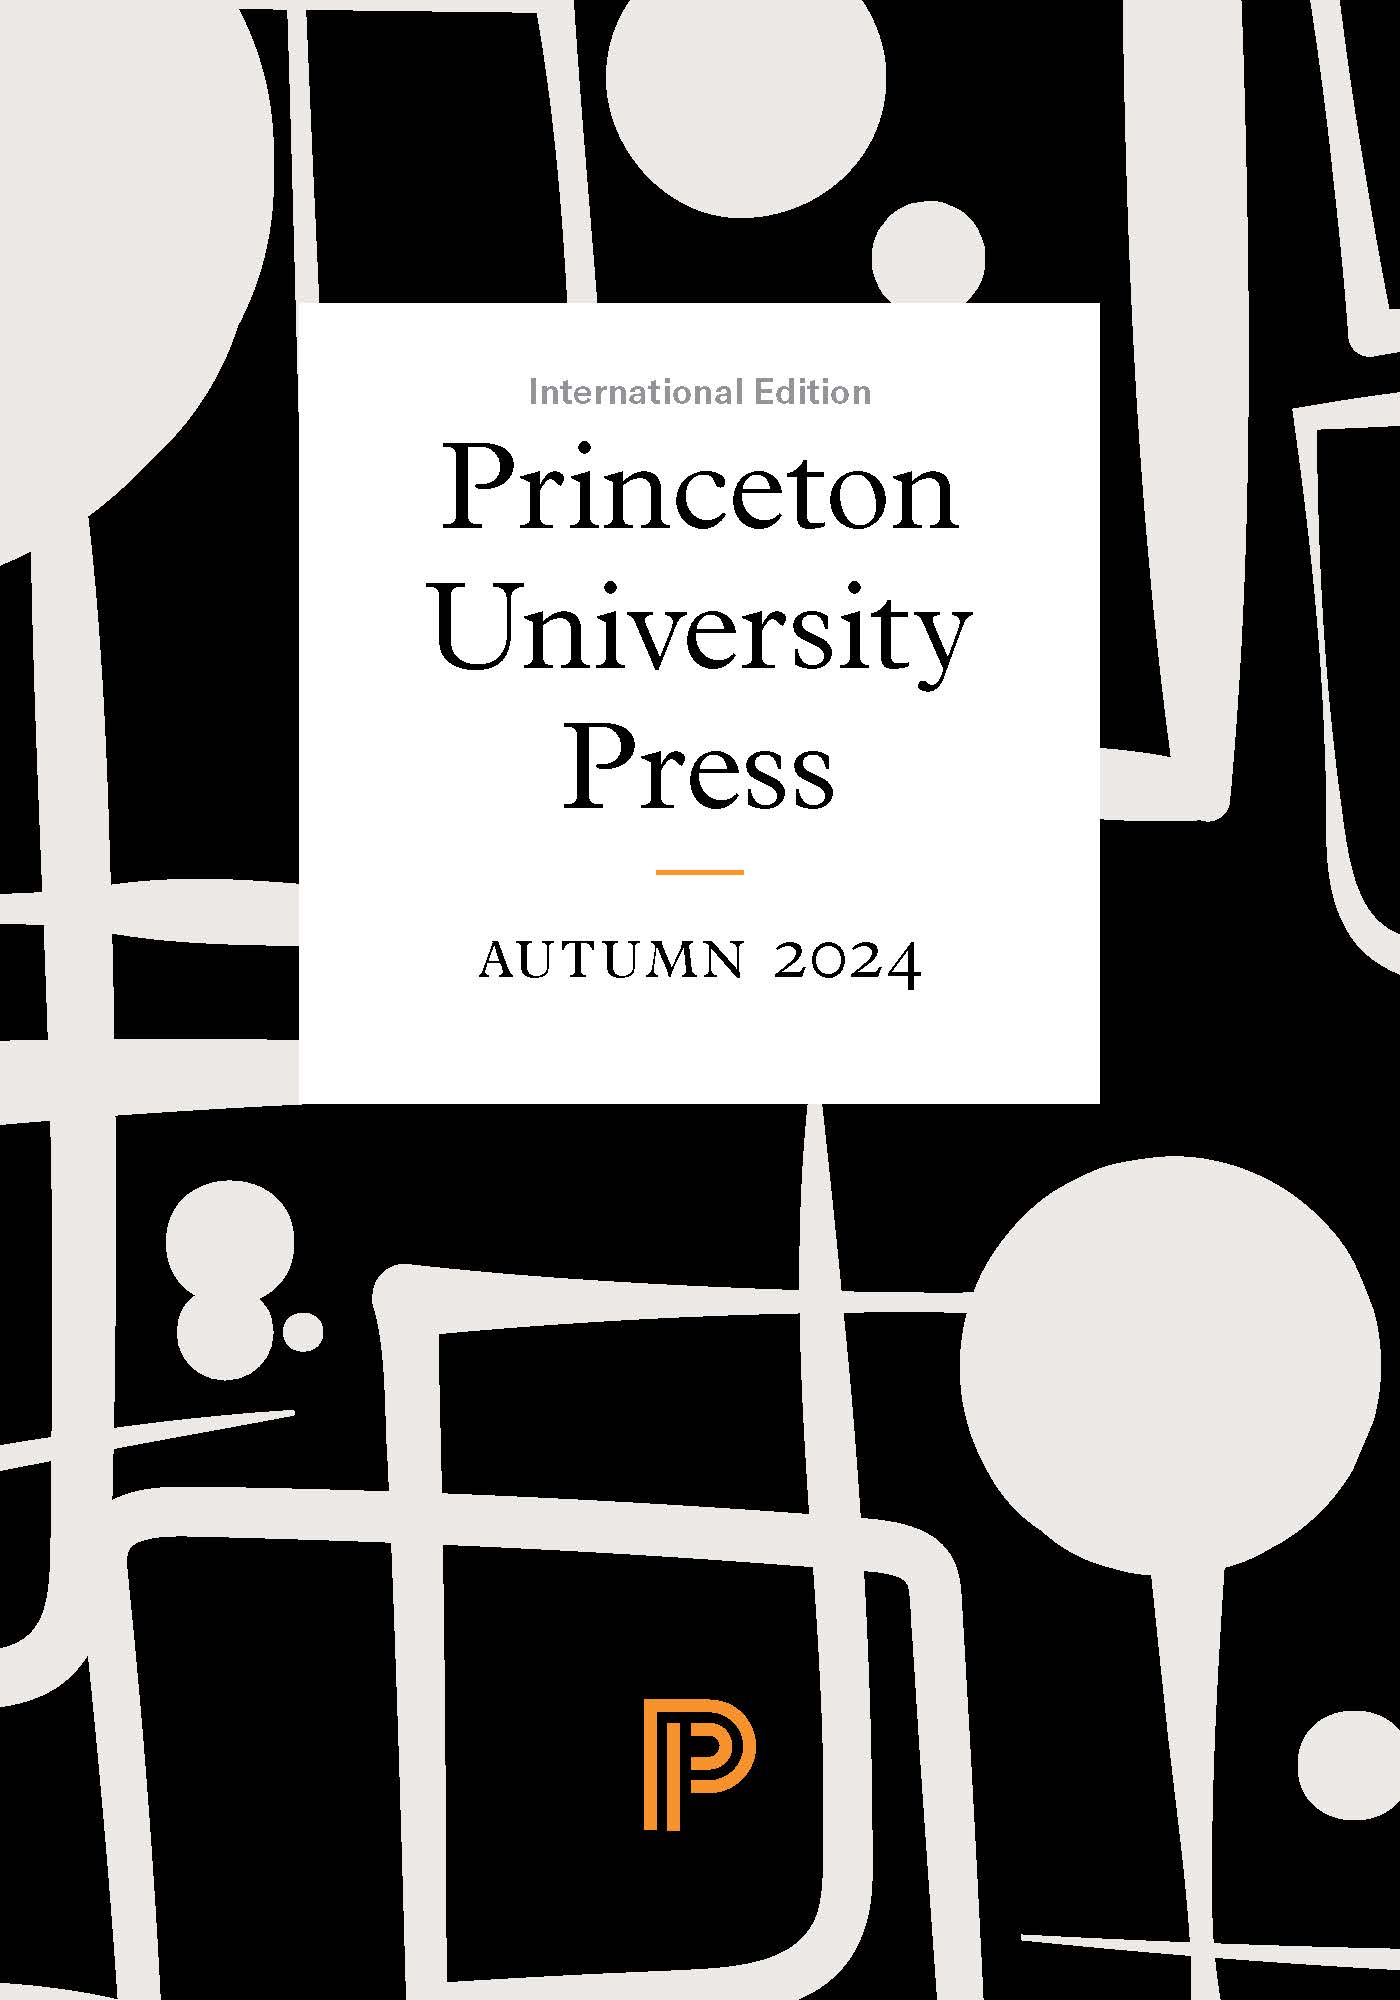 Princeton University Press